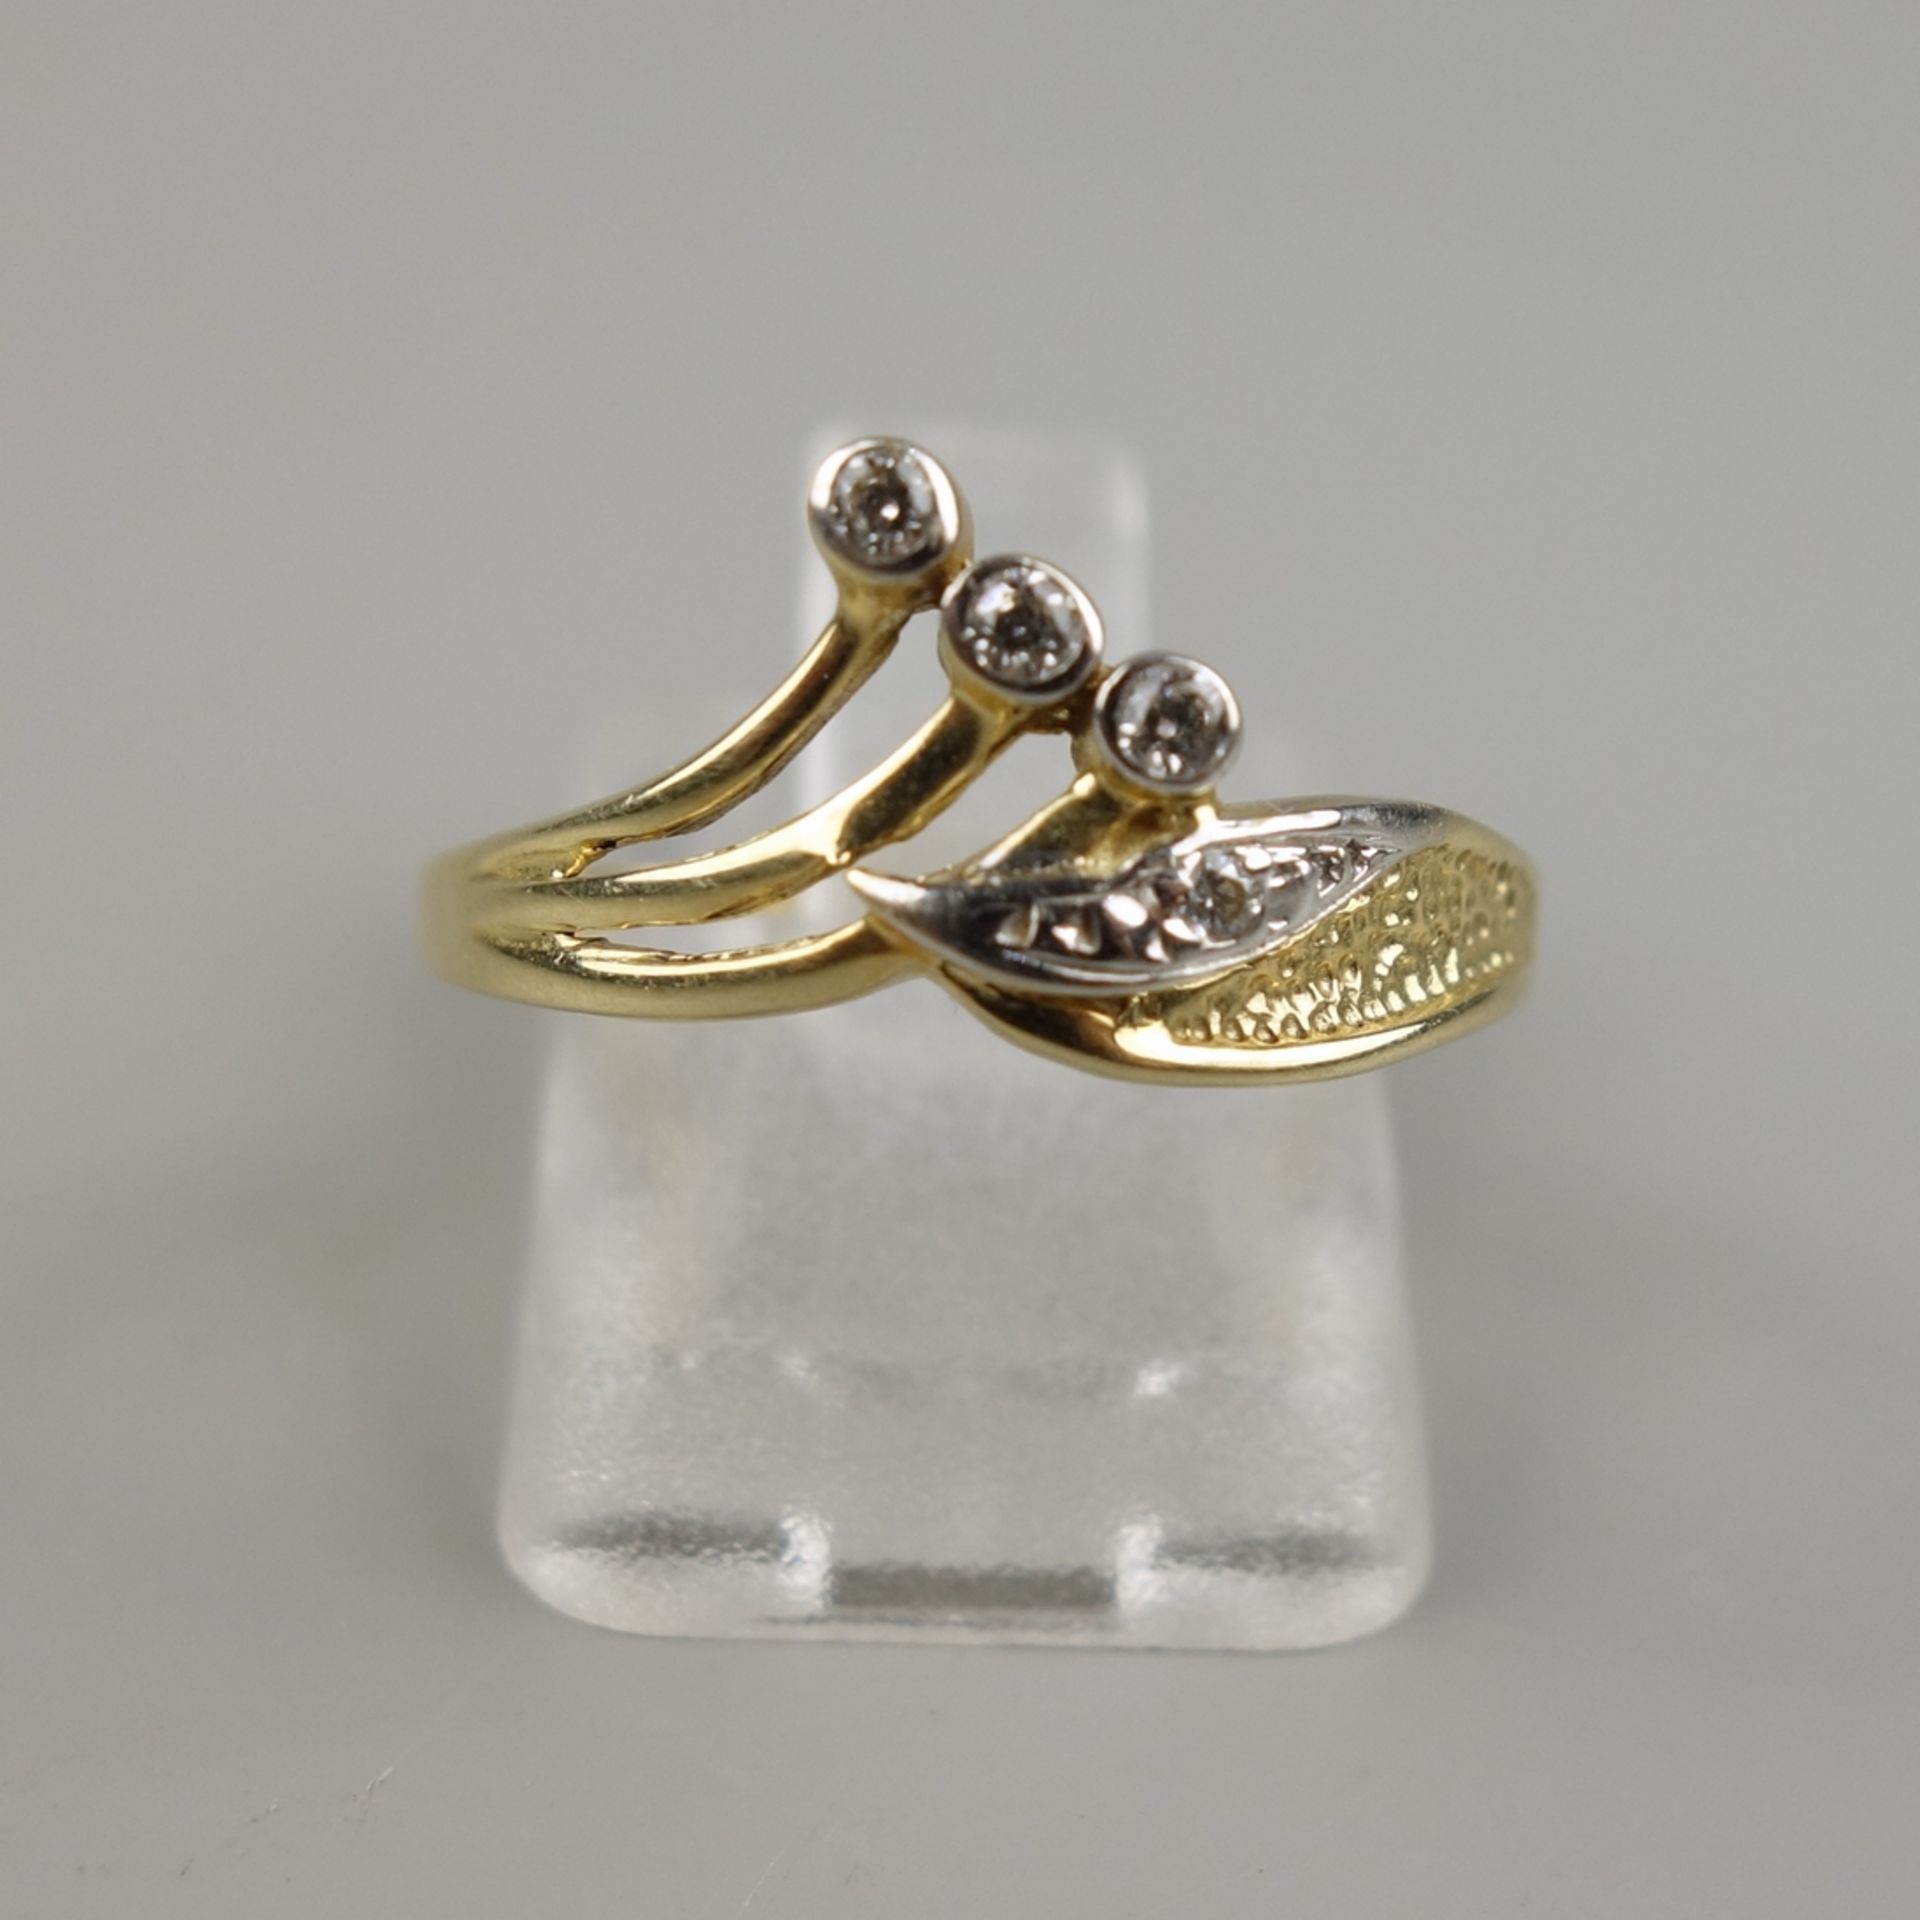 Ring mit 4 Zirkonias, 585er Gold, Gew.1,53g, floral gestalteter Ringkopf, U.54 - Bild 2 aus 2